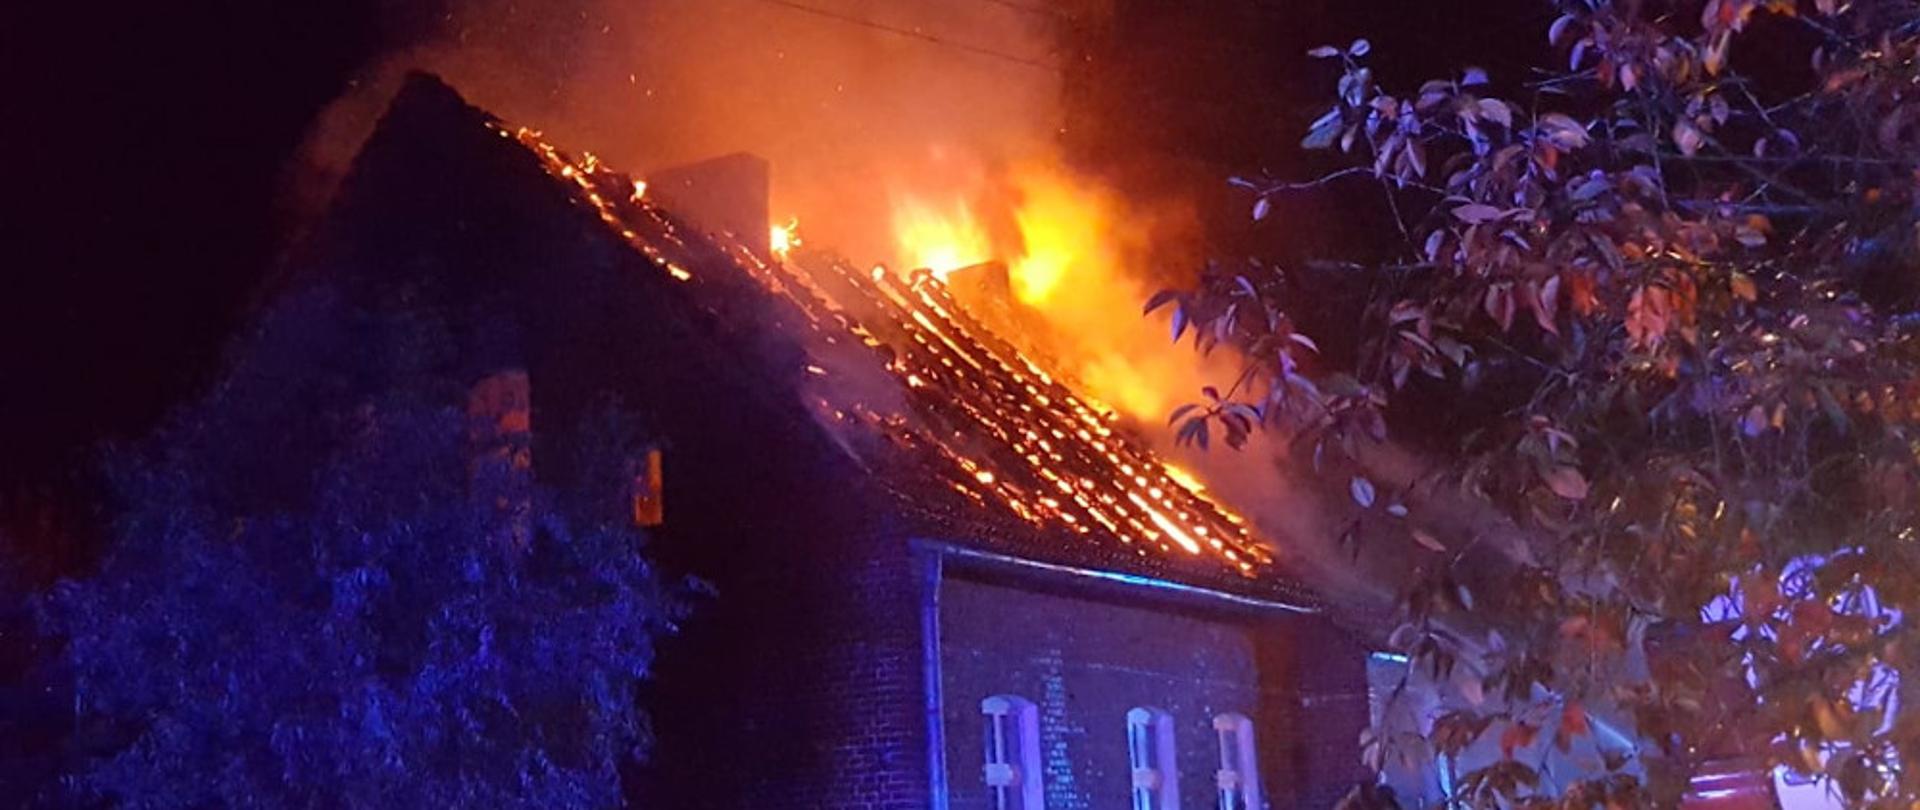 Pożar budynku mieszkalnego w miejscowości Nowy Chwalim - ogień wydostaje się z dachu